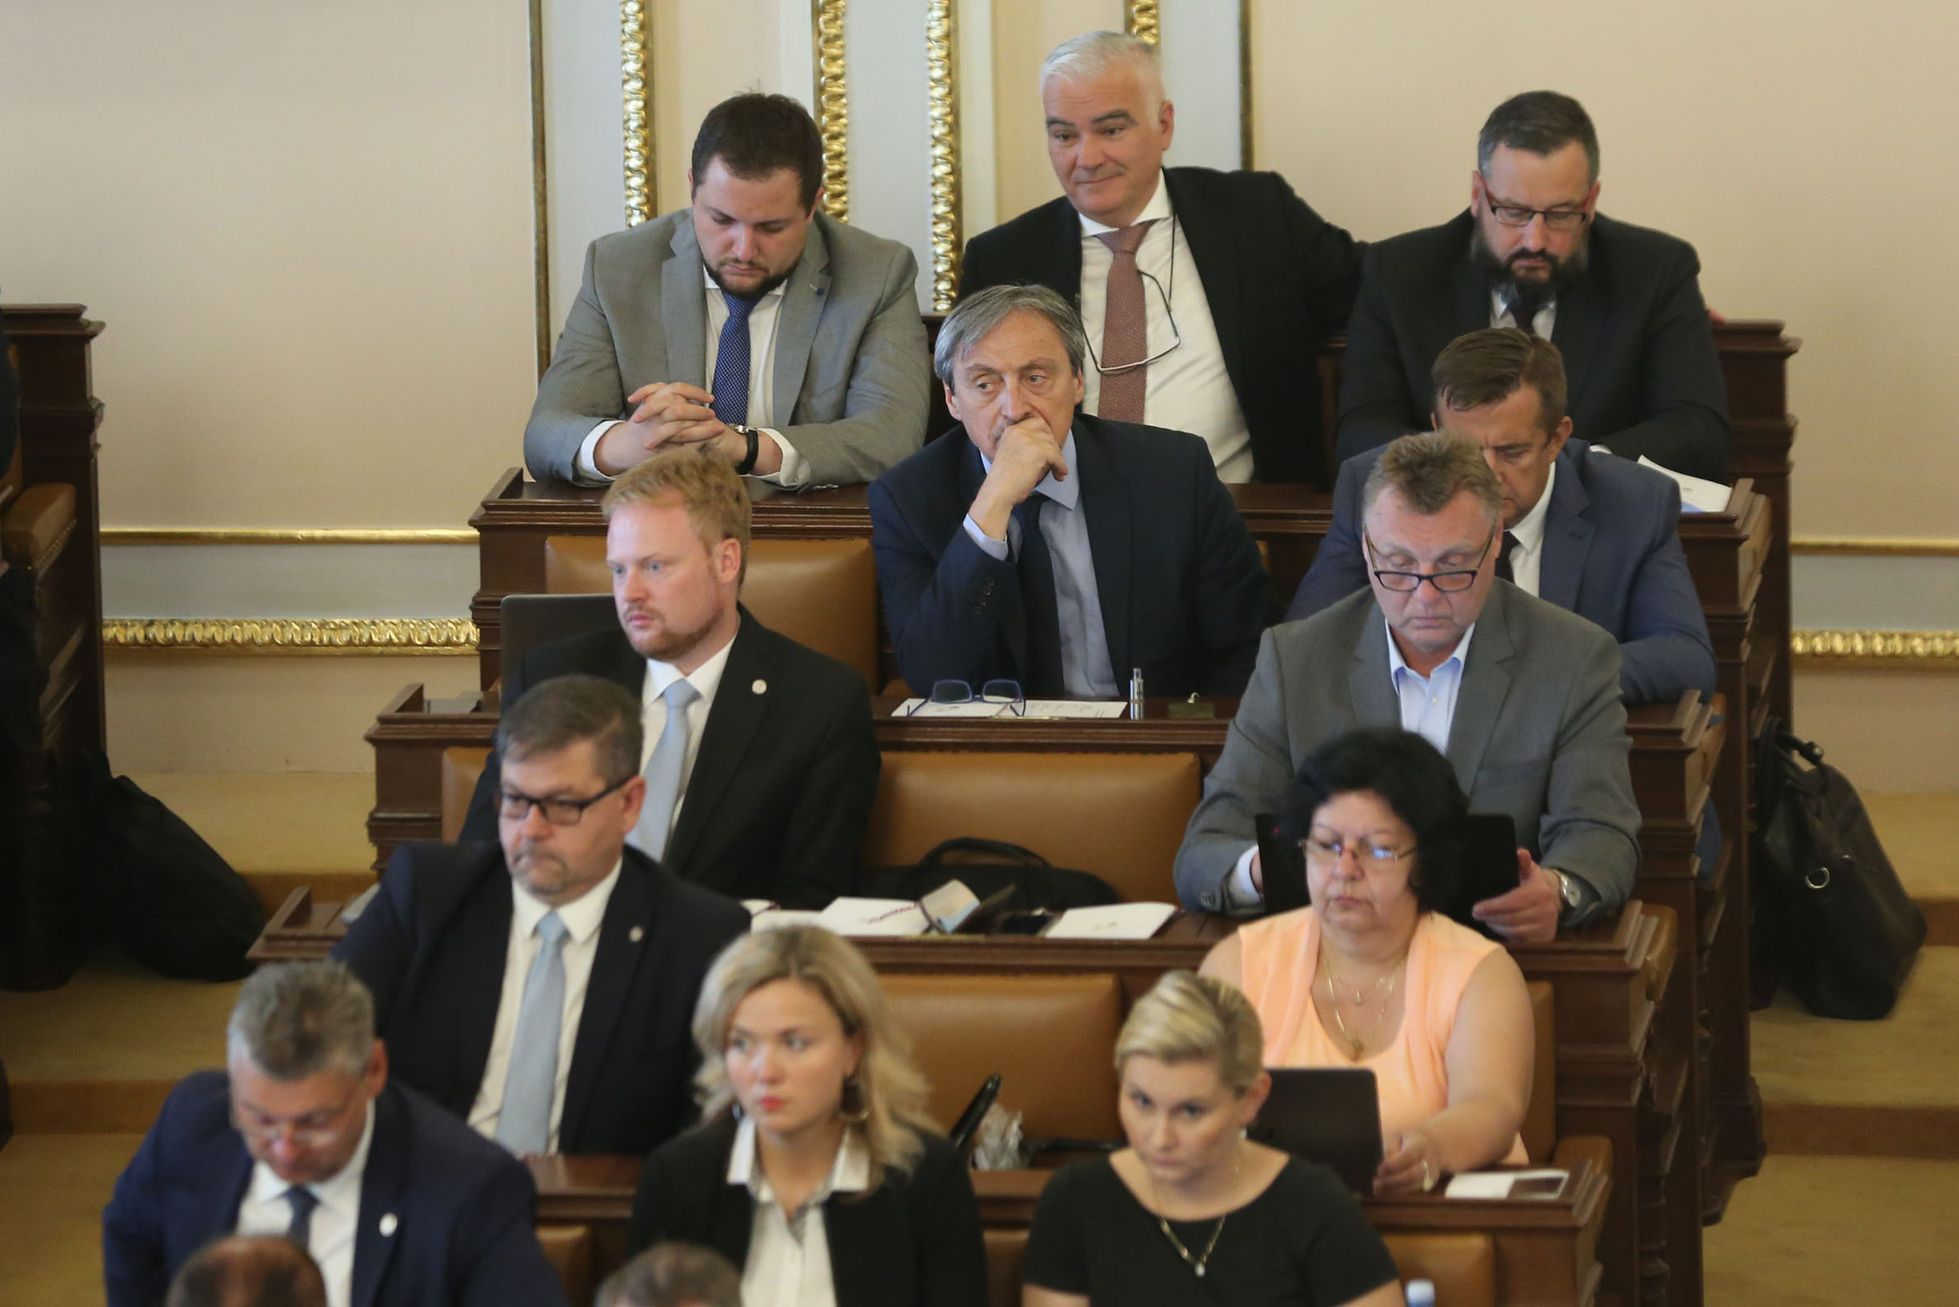 Hlasování o důvěře vládě Andreje Babiše